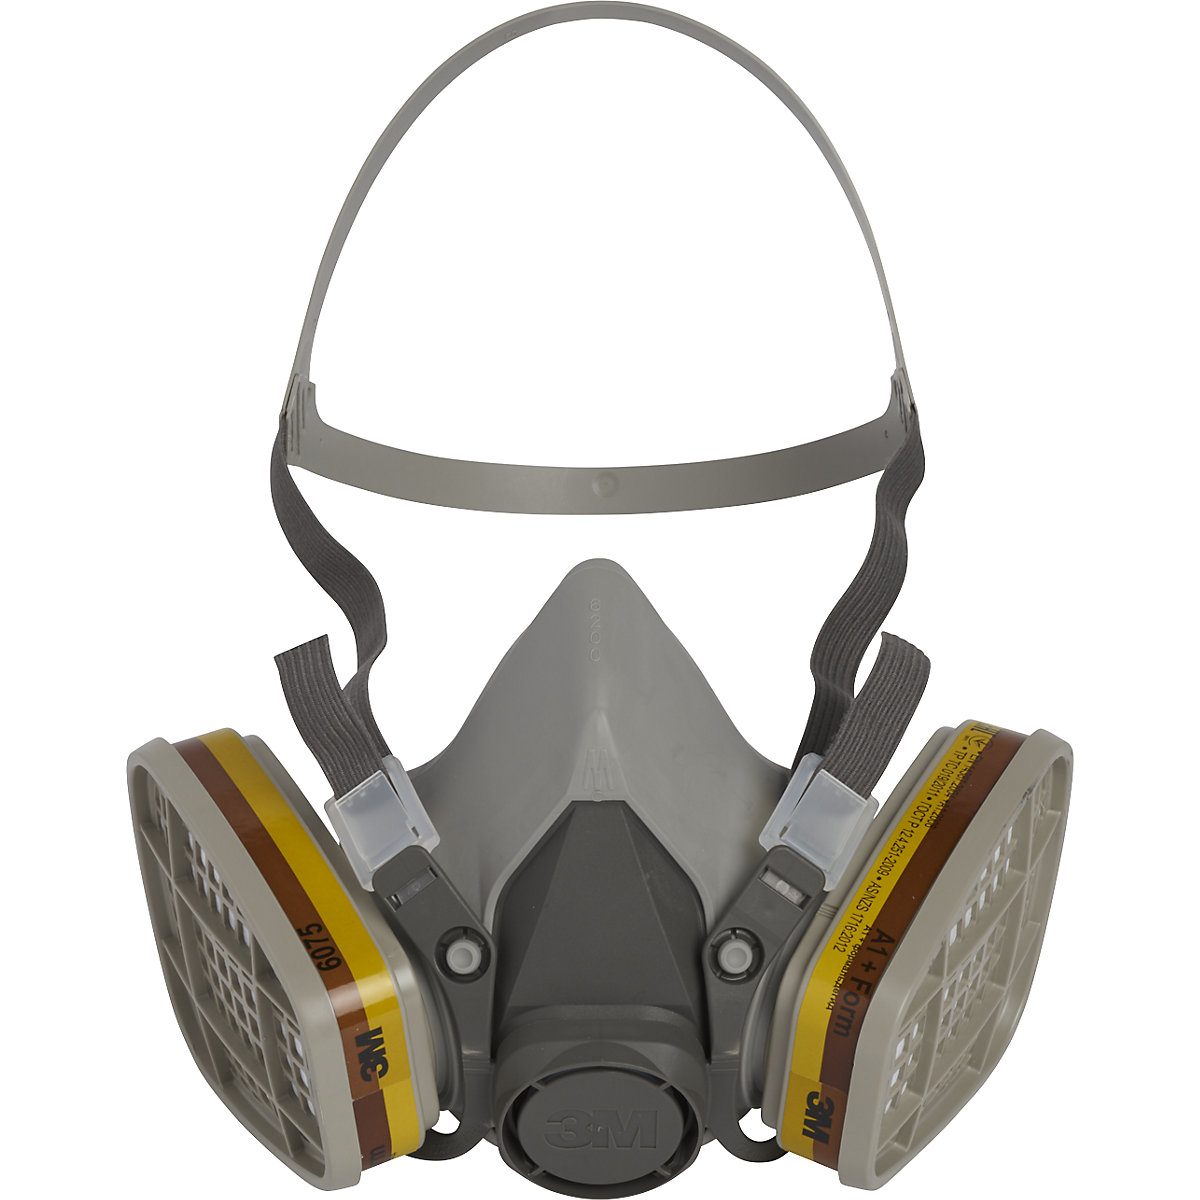 Demi-masque de protection respiratoire de série 6000 de 3M. Homologué NIOSH  Cartouche et filtre non-inclus. Large.